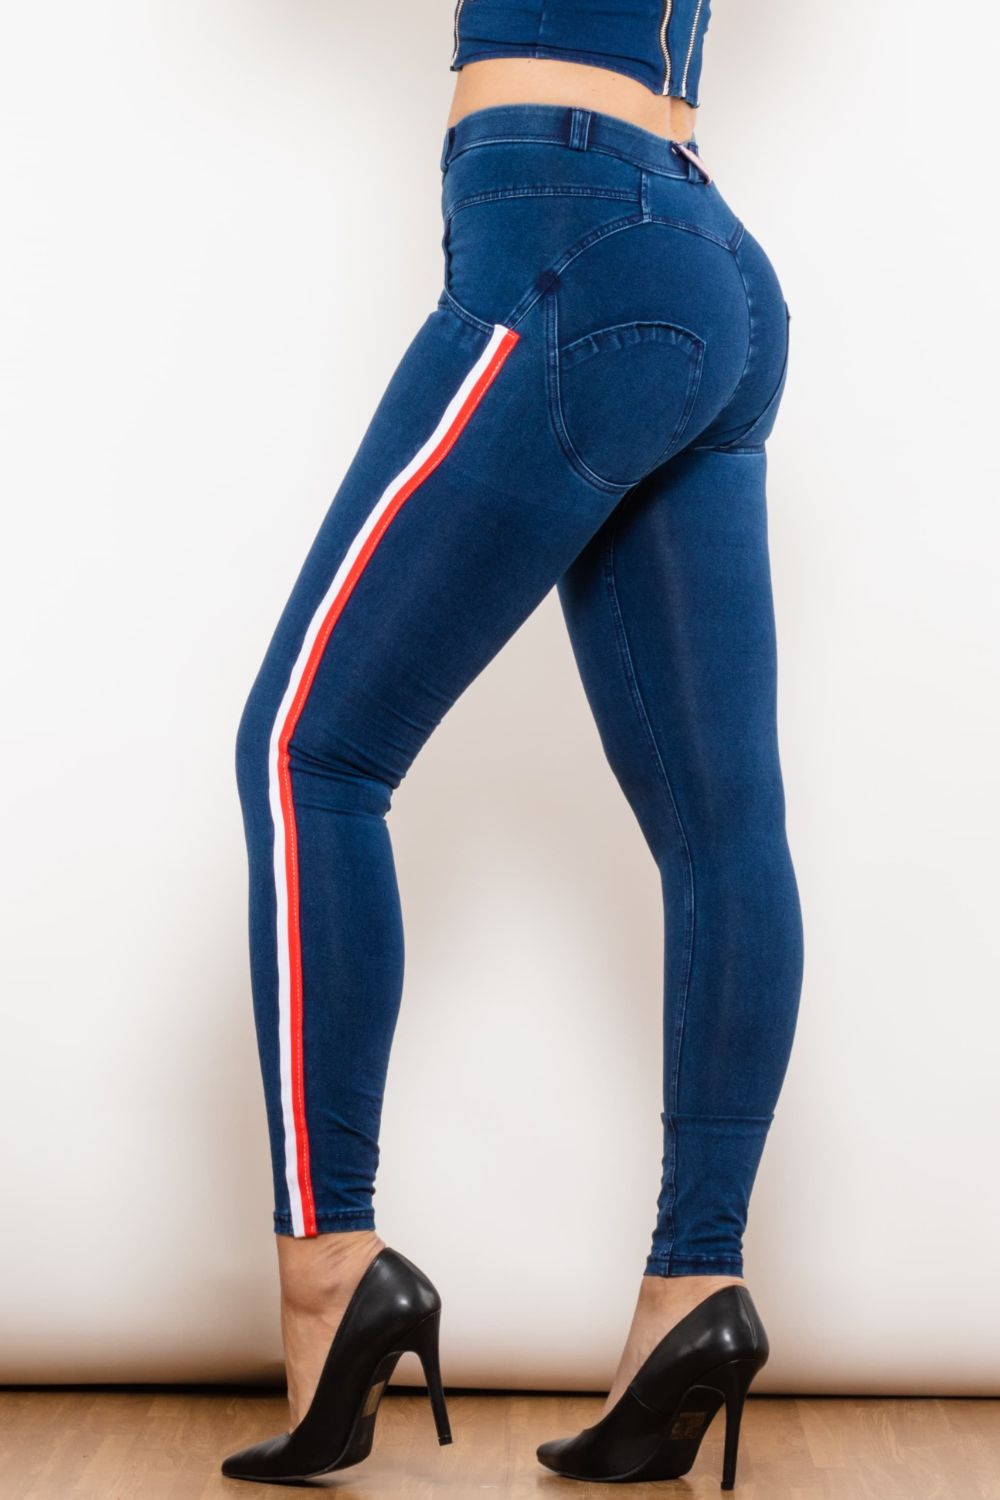 Stripe LLC – Jeans Flyclothing Skinny Side